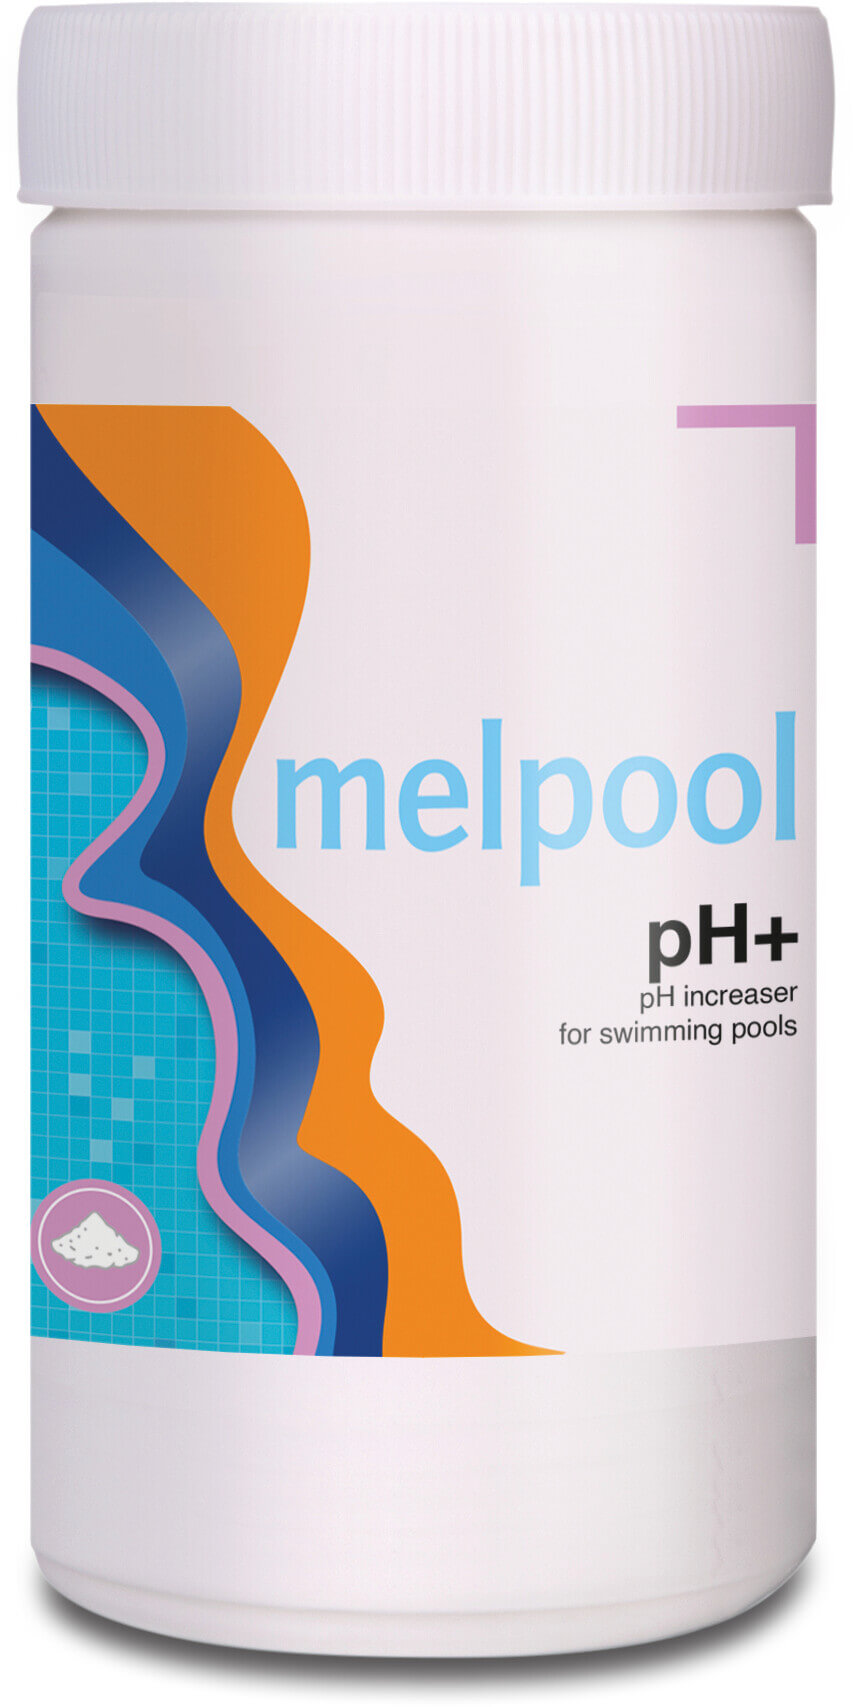 Melpool pH+ carbonate de sodium pour augmenter pH 5000g BE